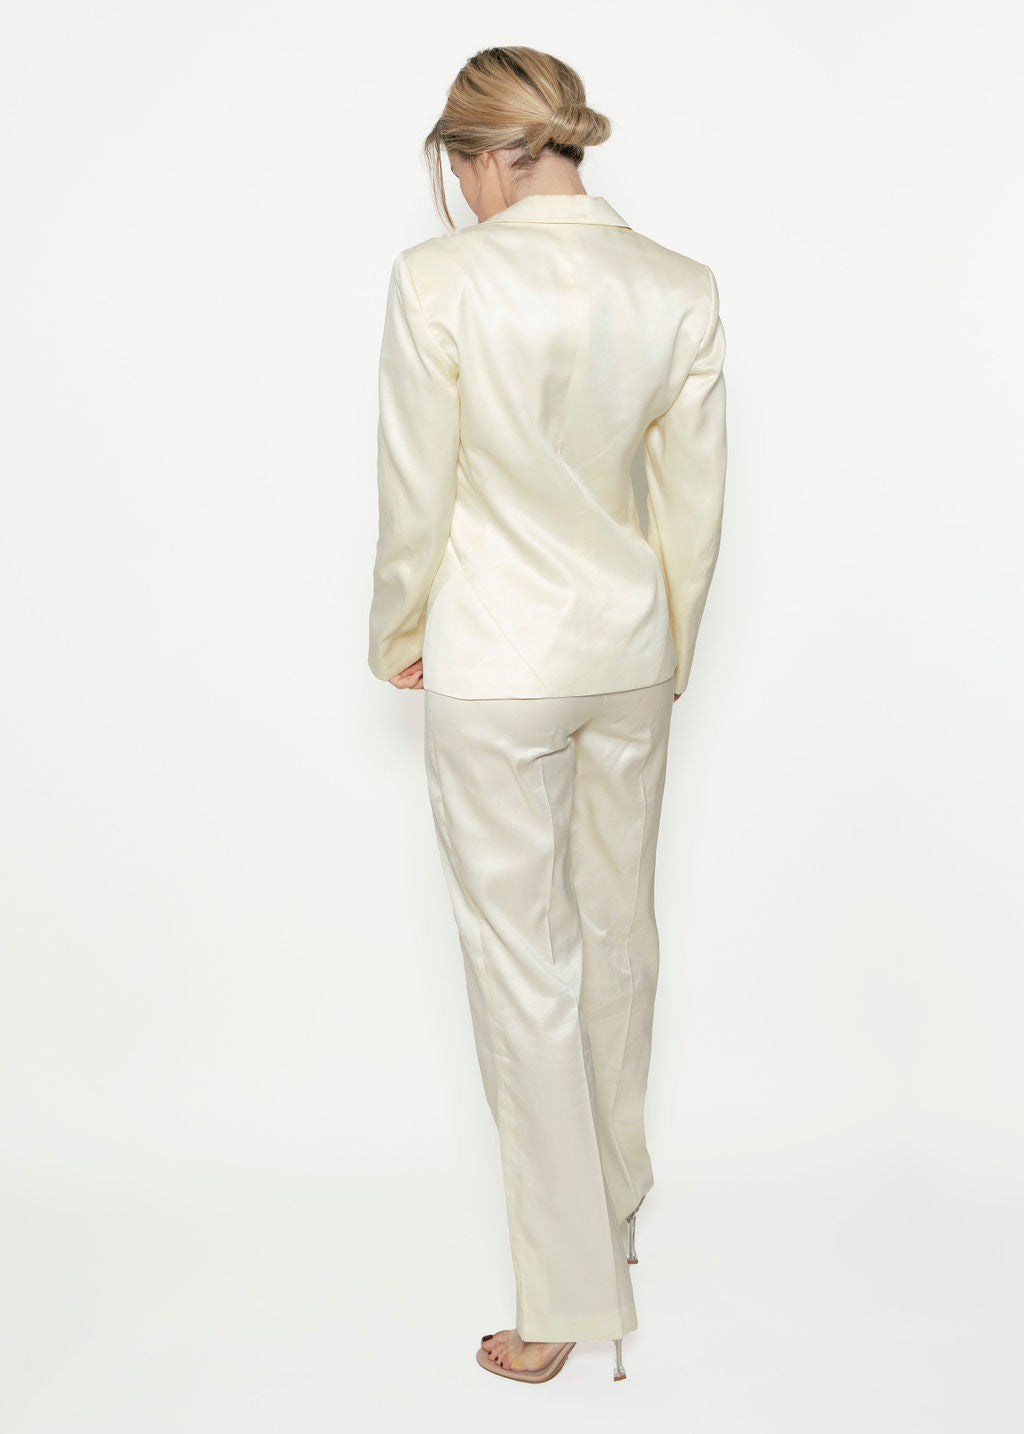 Versus by Versace Cream Satin Suit